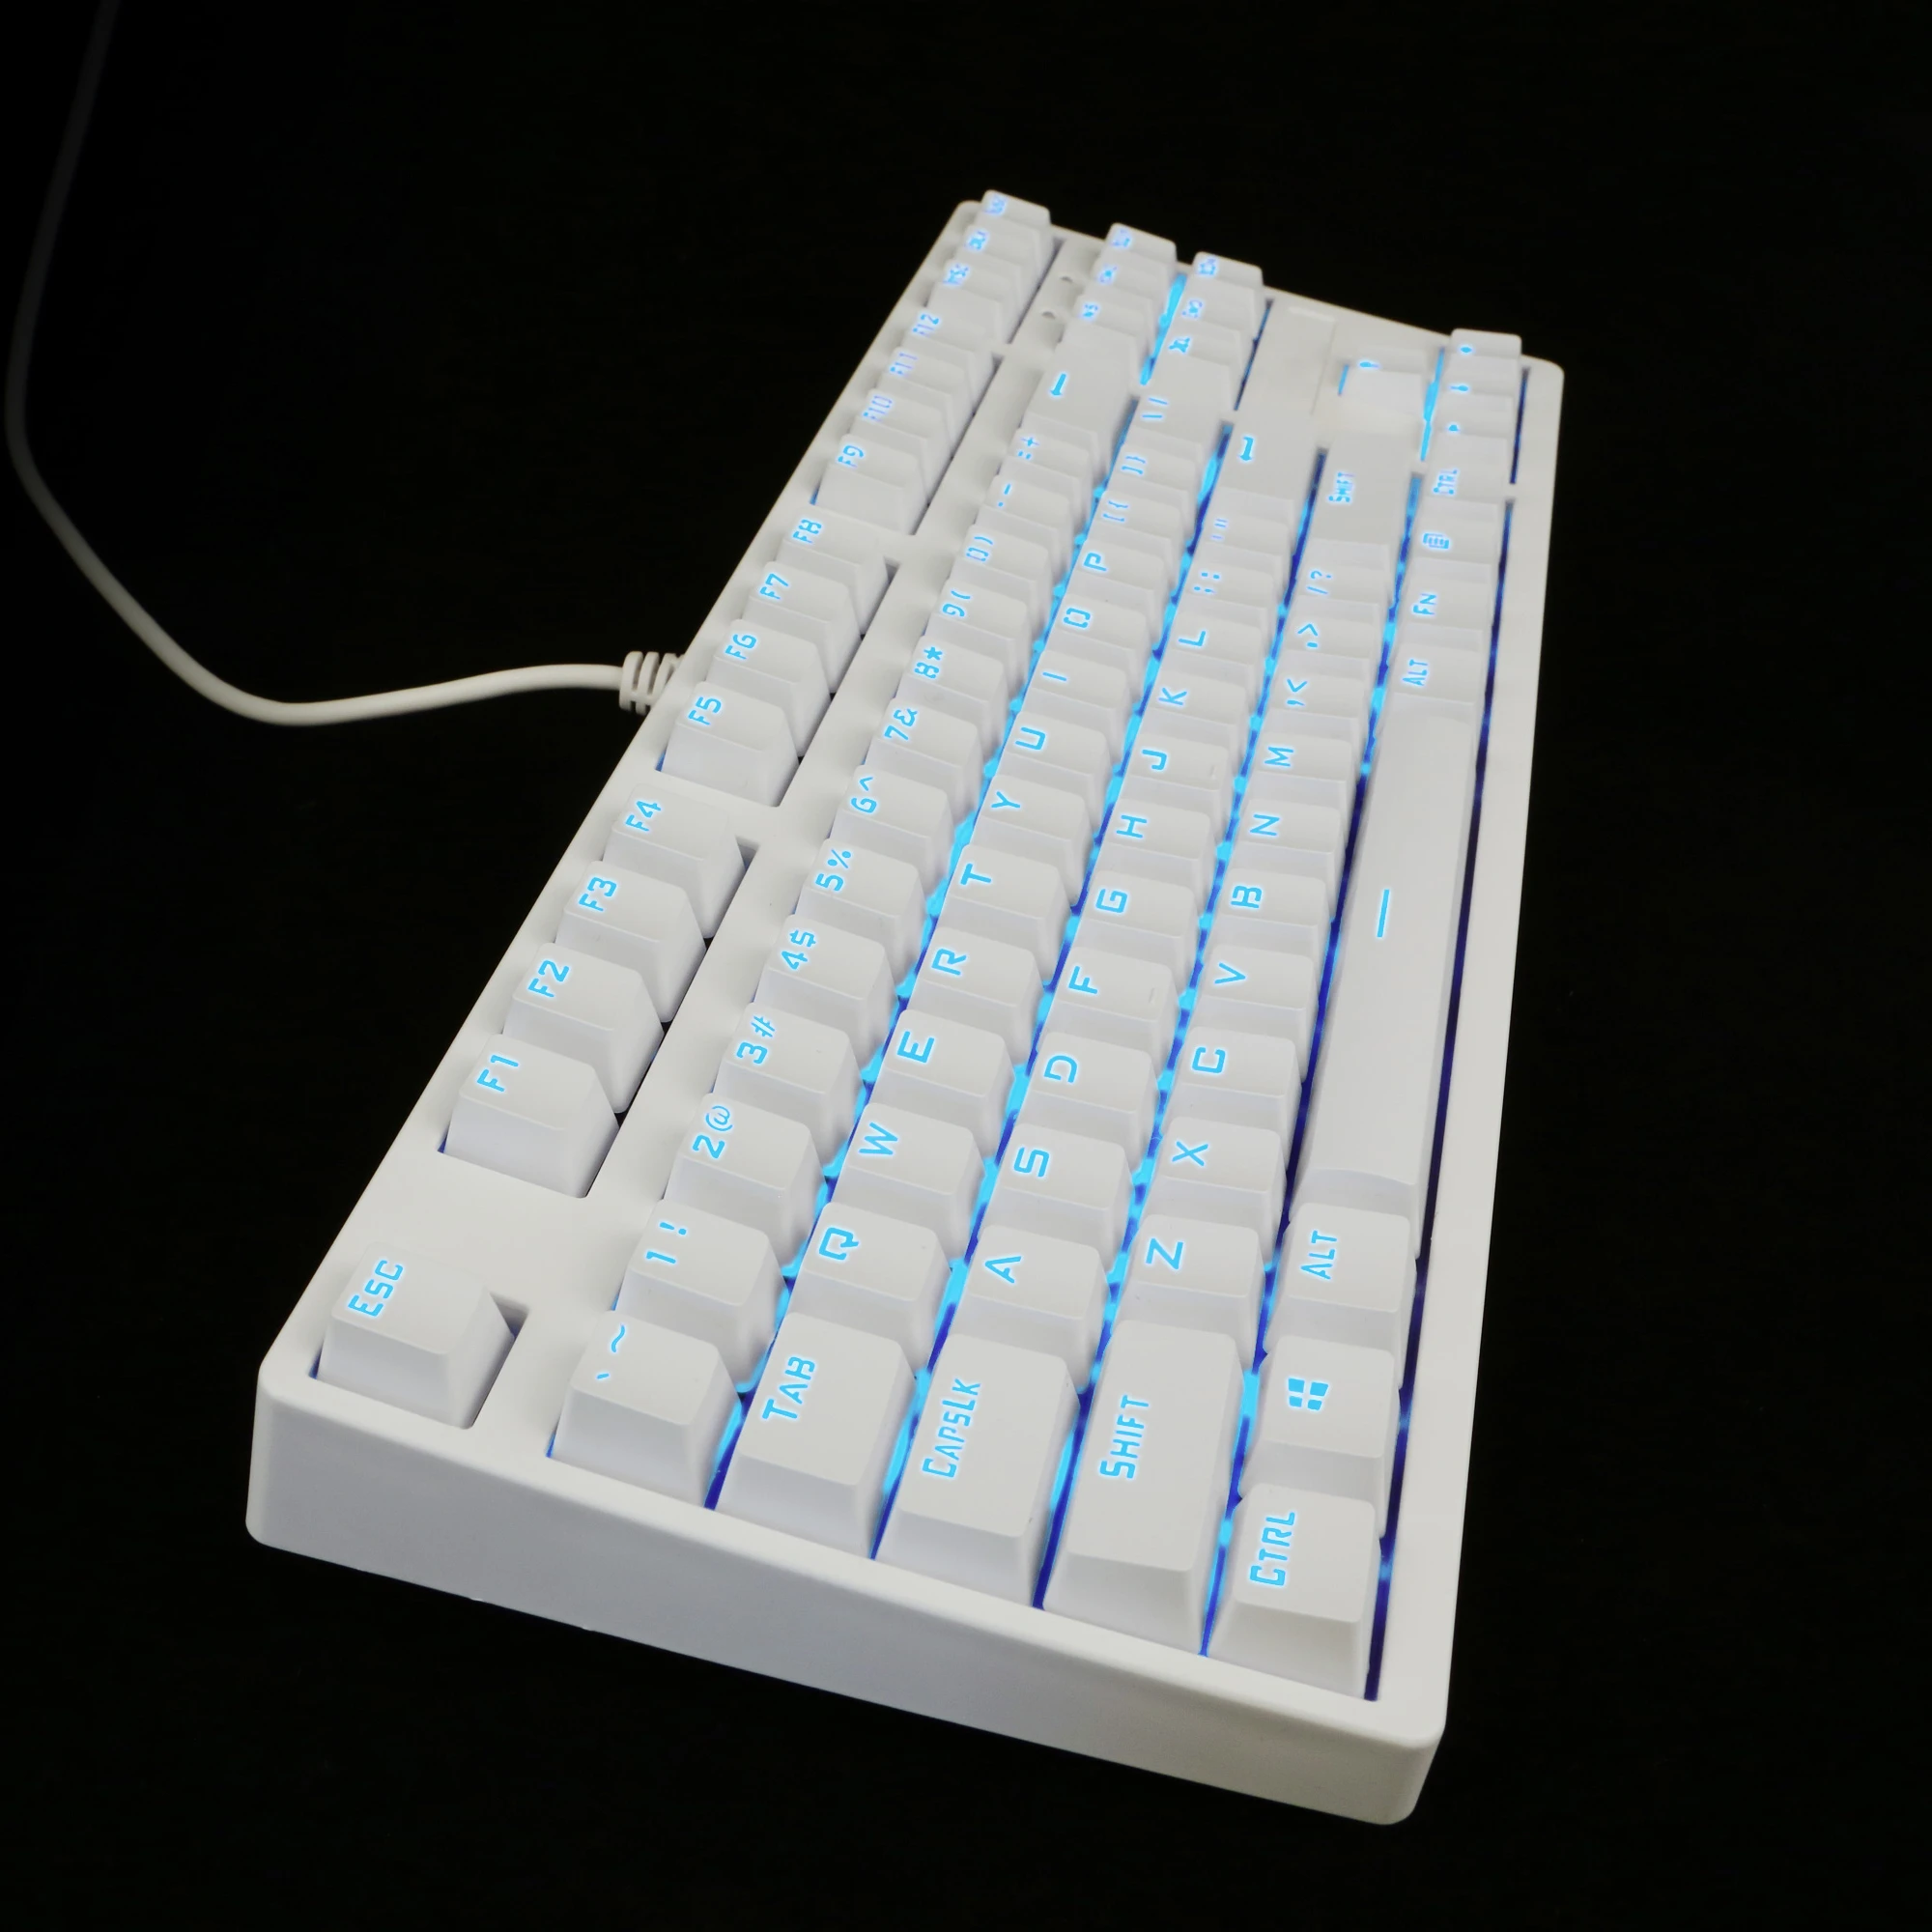 شنتشن لوحة المفاتيح الماوس المورد لوحة مفاتيح الألعاب الميكانيكية مع 87 مفاتيح ميكانيكية